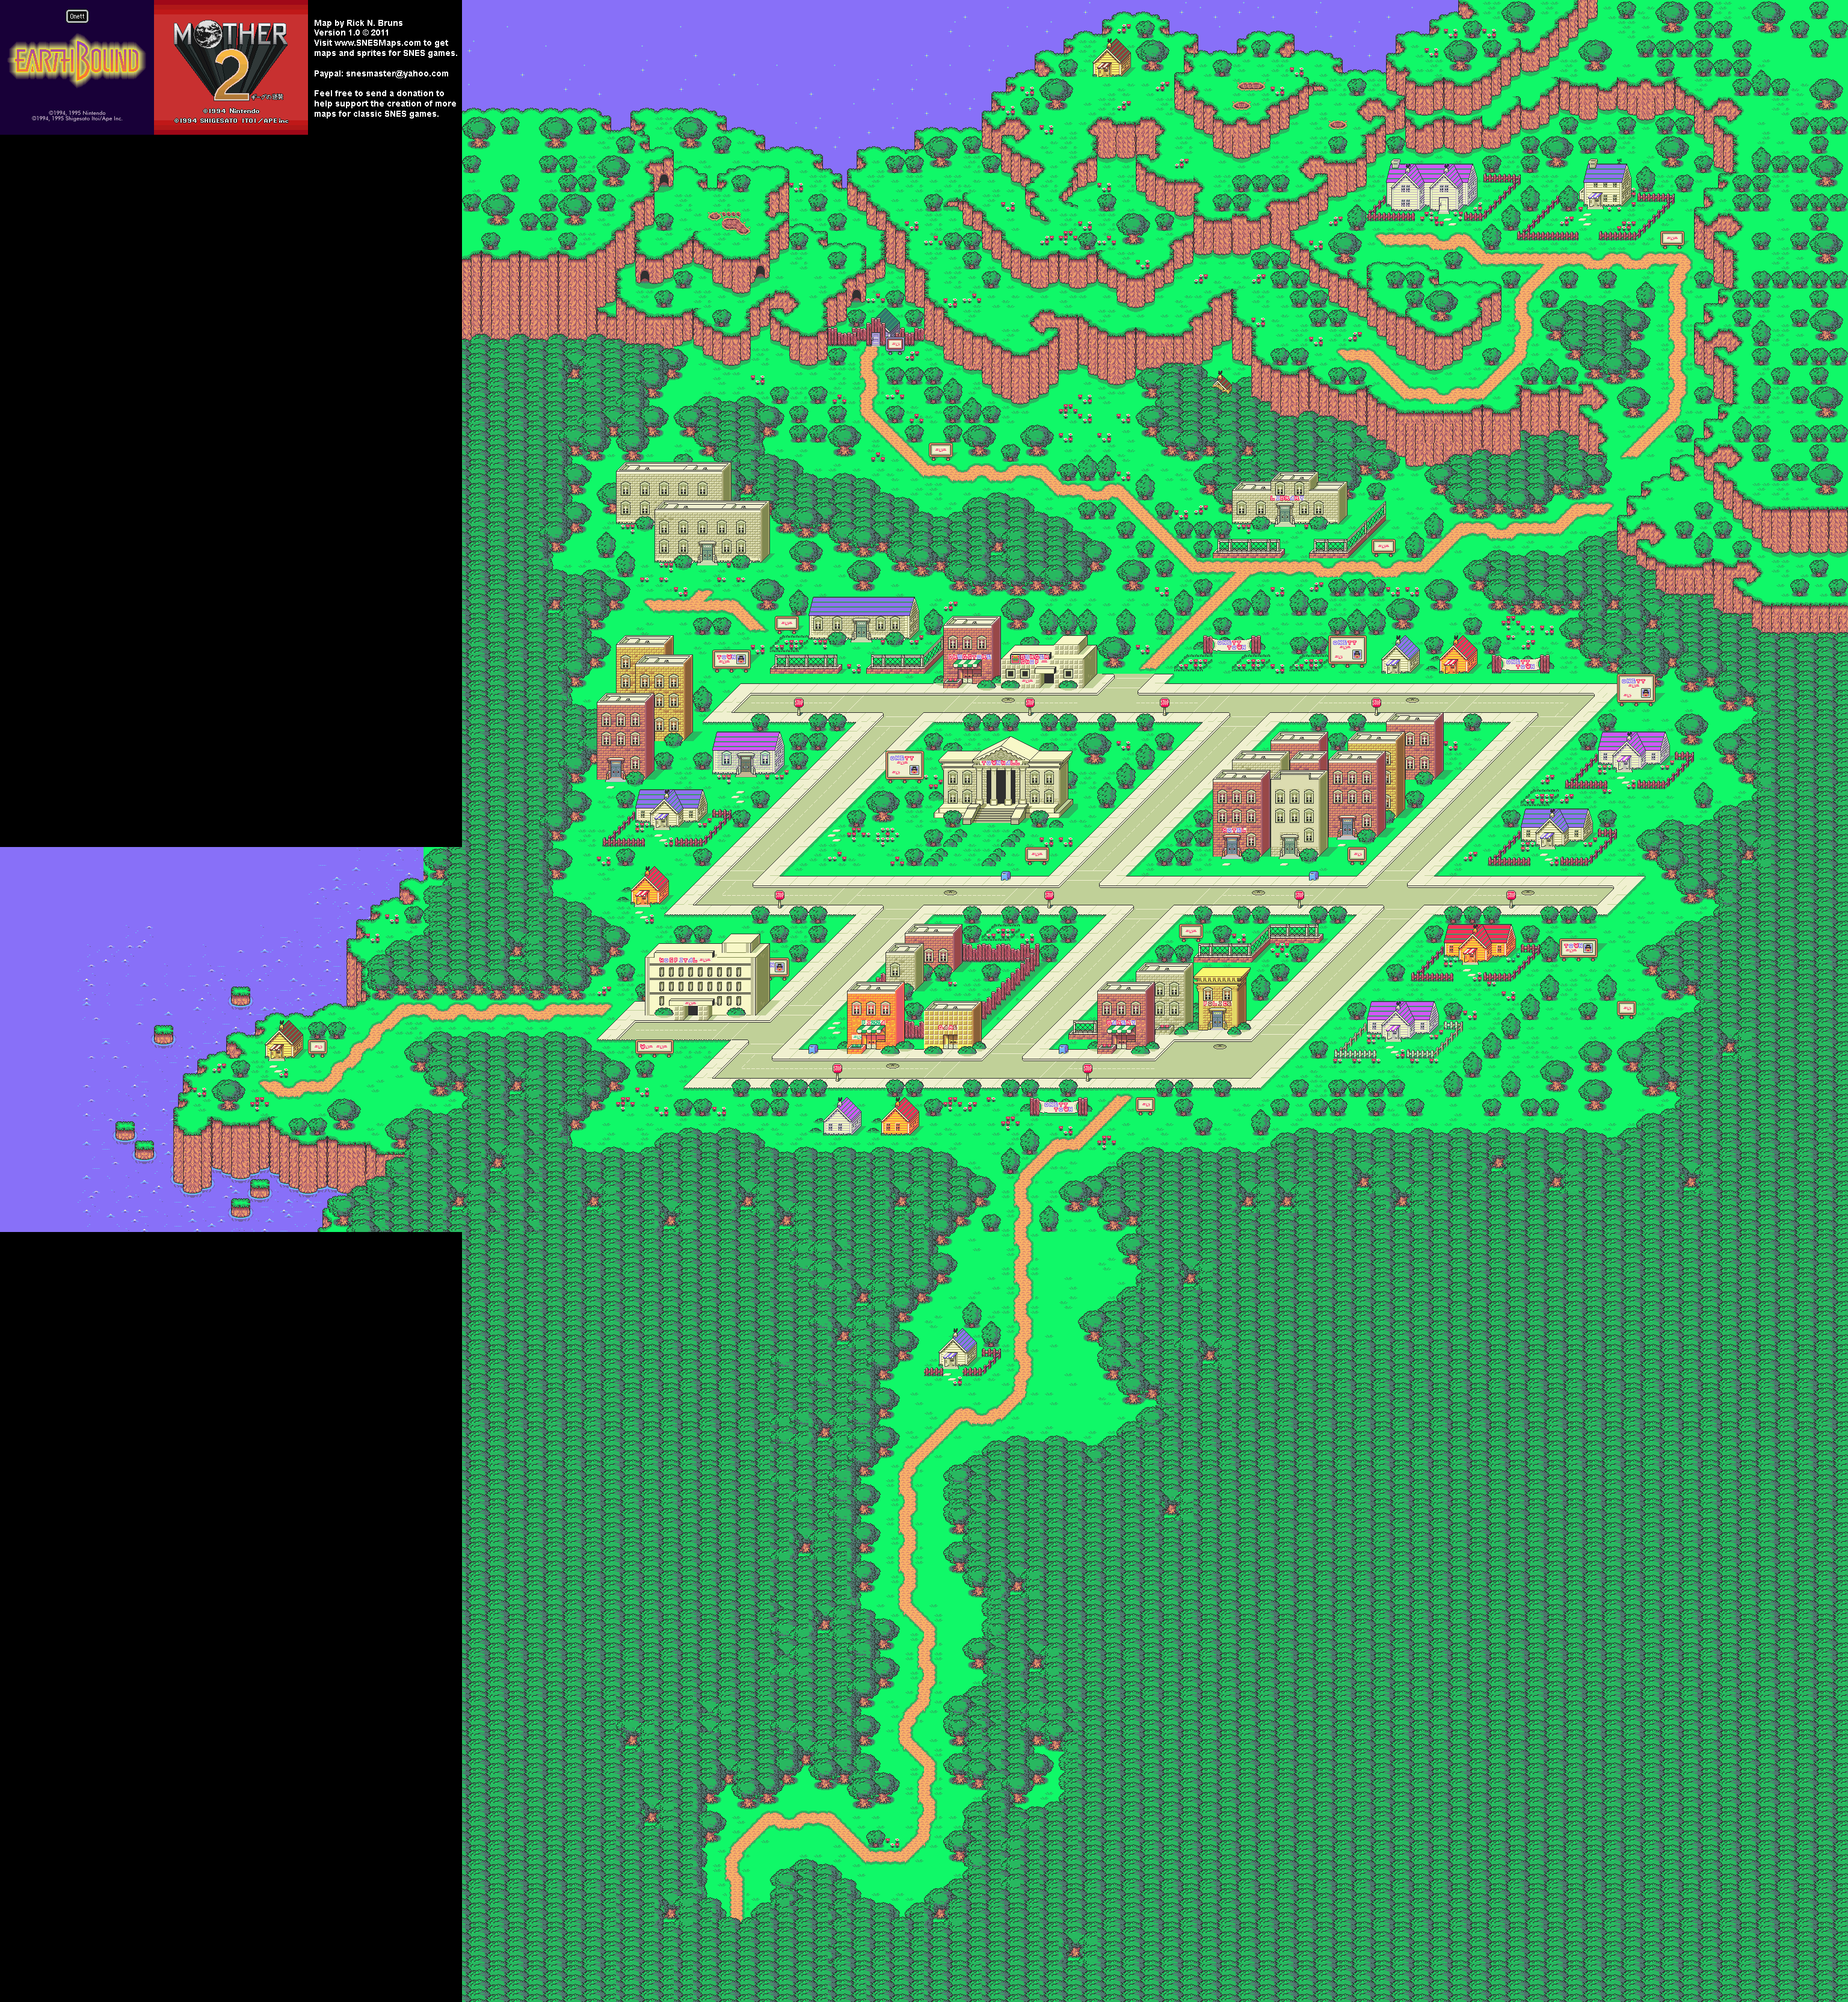 EarthBound (Mother 2) - Onett Super Nintendo SNES Map BG